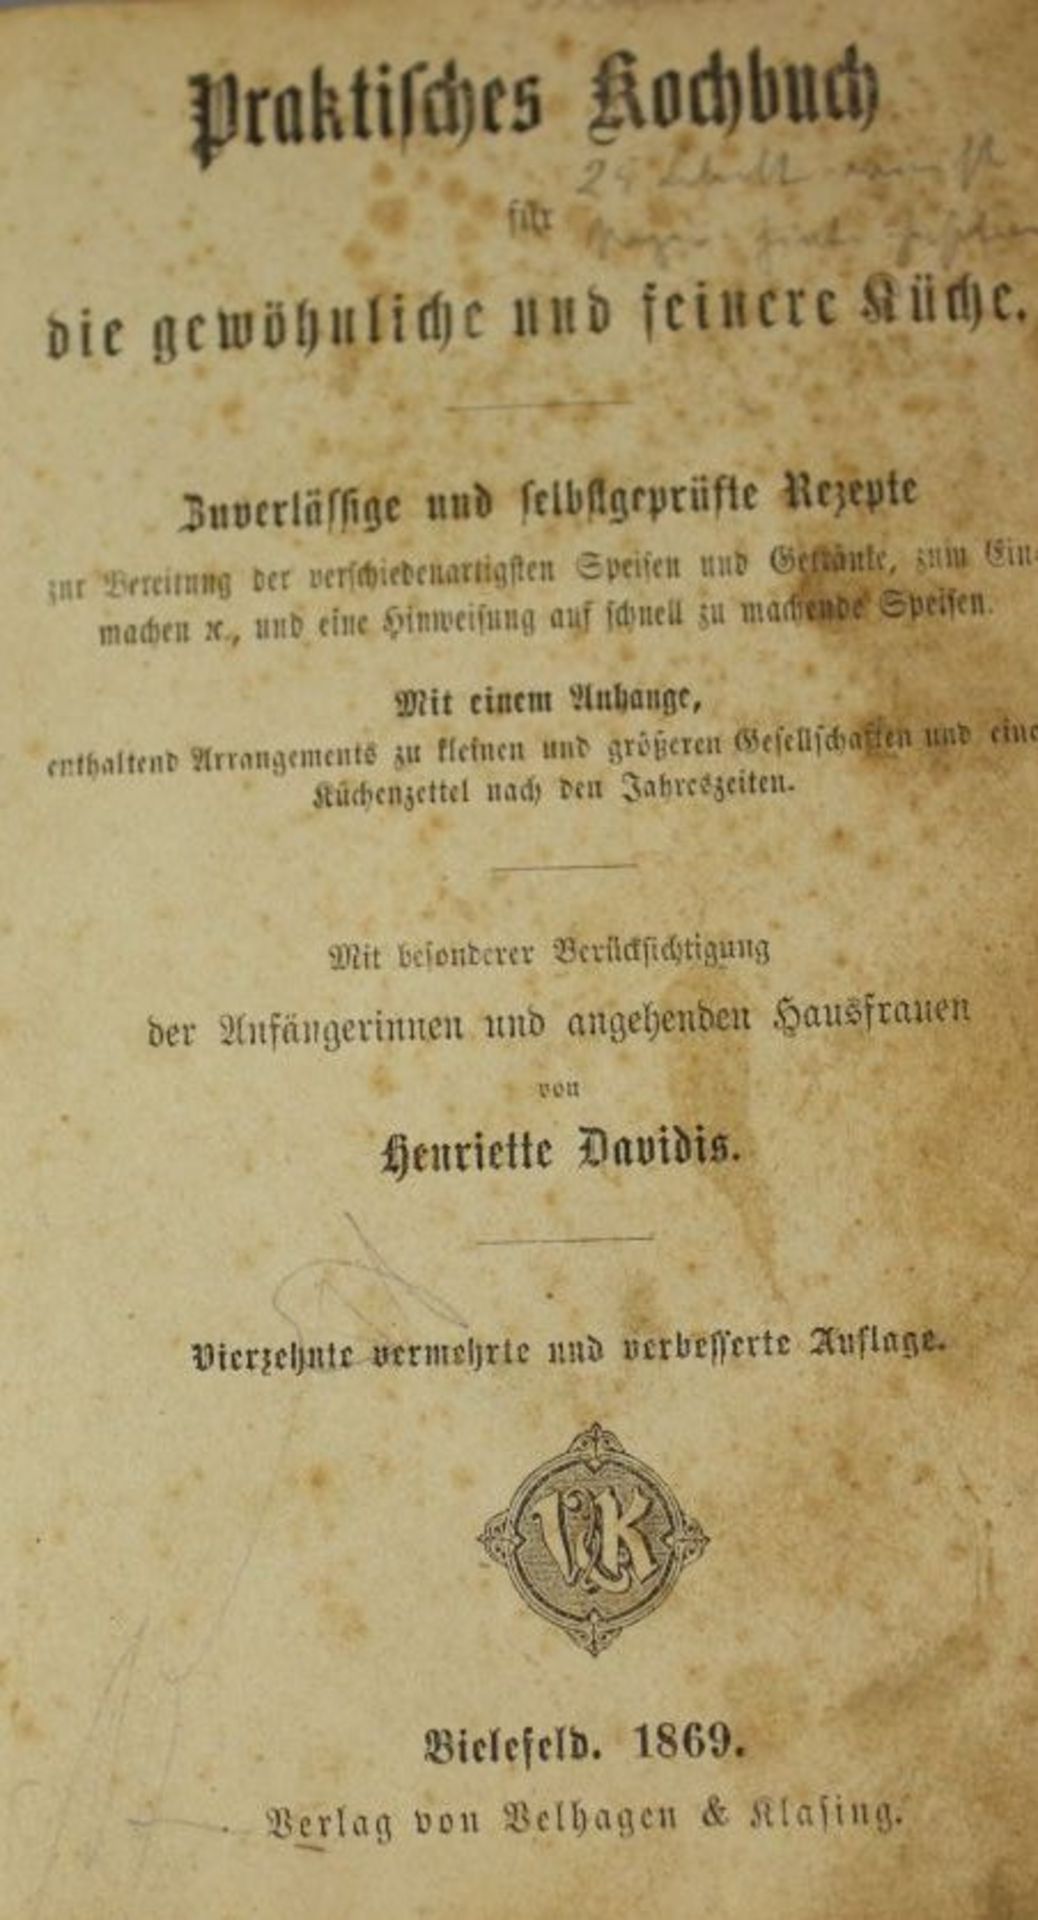 Henriette Davidis Praktisches Kochbuch für die gewöhnliche und feinere Küche, Bielefeld 1869, - Bild 2 aus 3